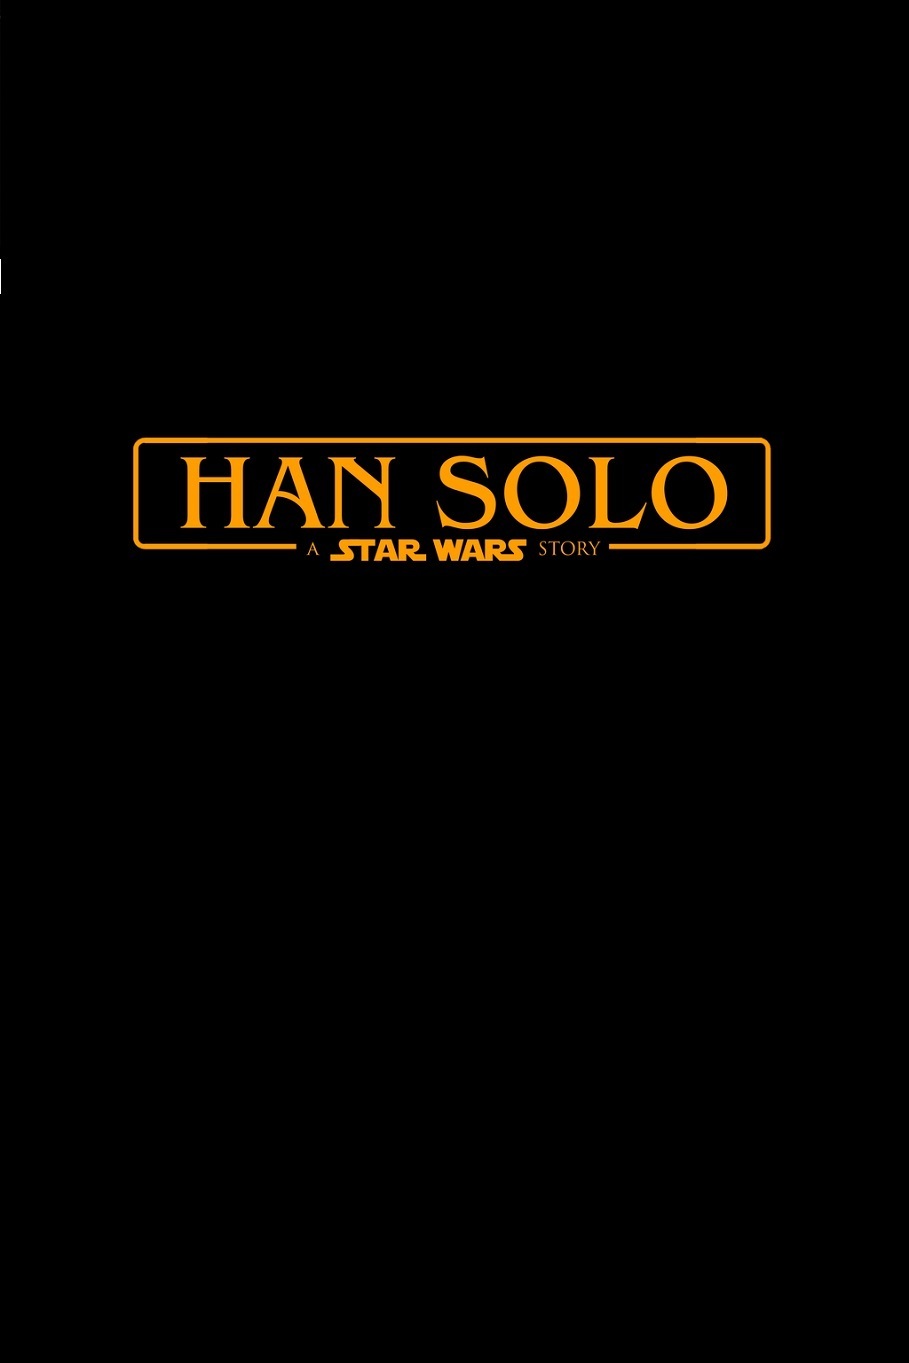 Película de 'Han Solo' (Star Wars)